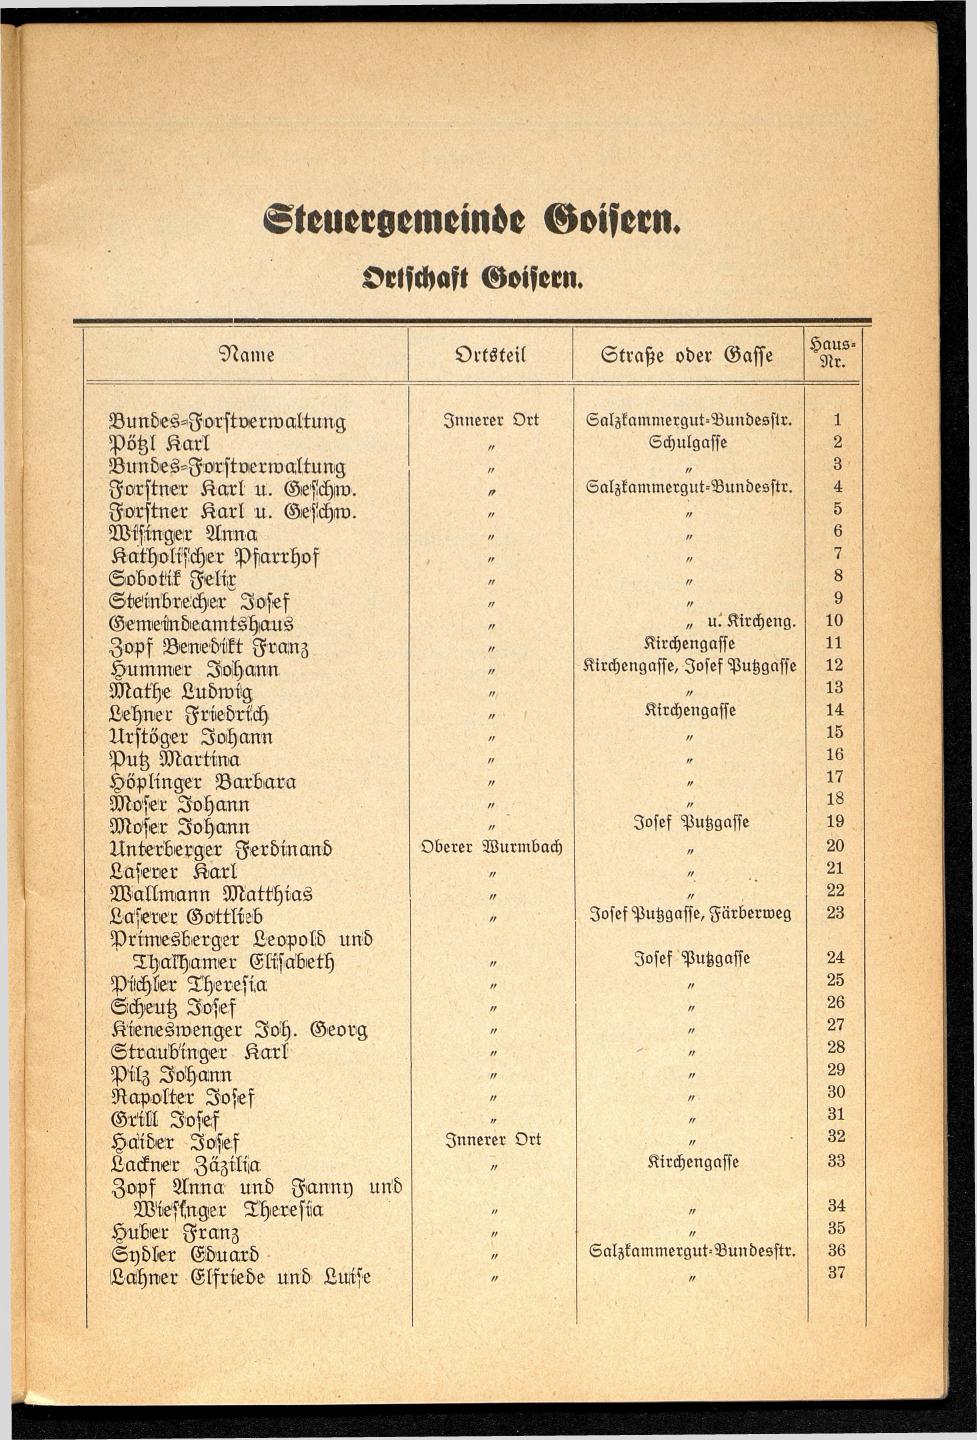 Häuser-Verzeichnis der Gemeinde Goisern nach dem Stande von November 1937 - Seite 7